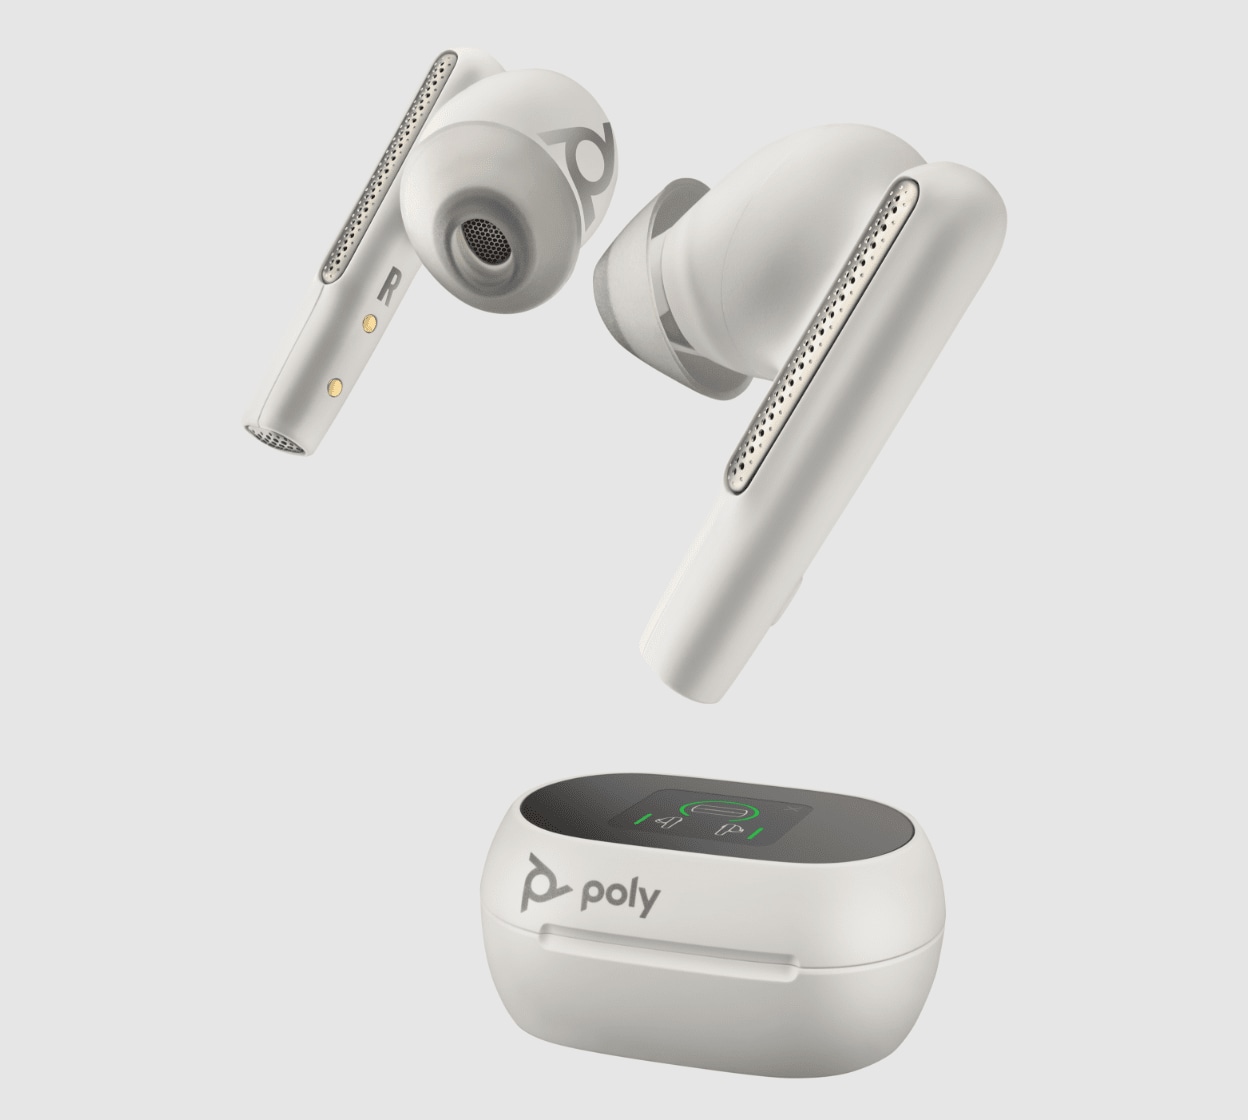 Voyager Focus UC: auricular estéreo con Bluetooth